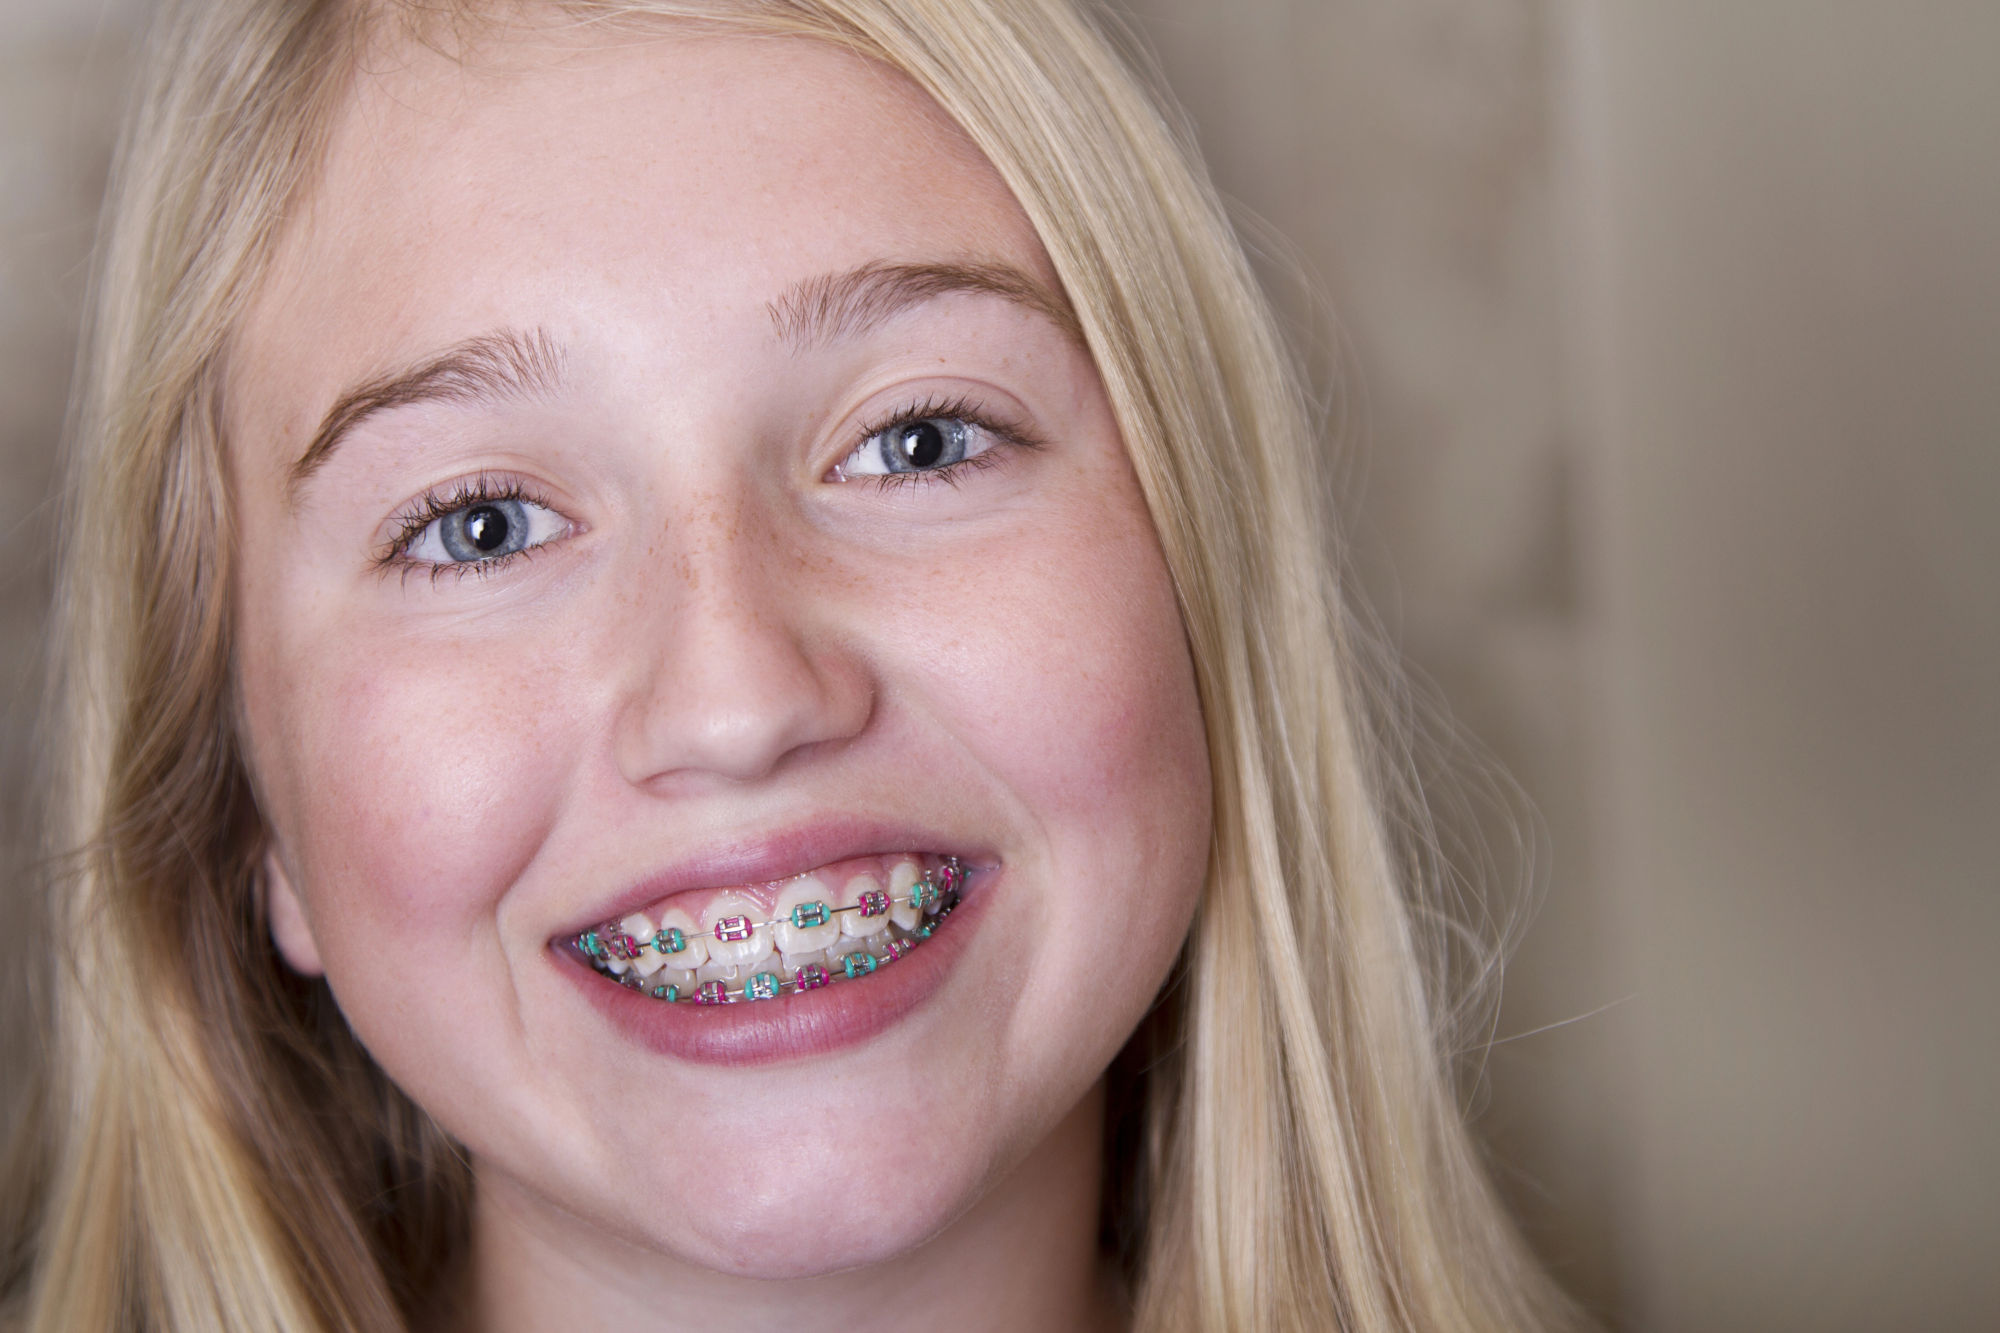 Les bagues restent les appareils orthodontiques les plus utilisés chez les adolescents